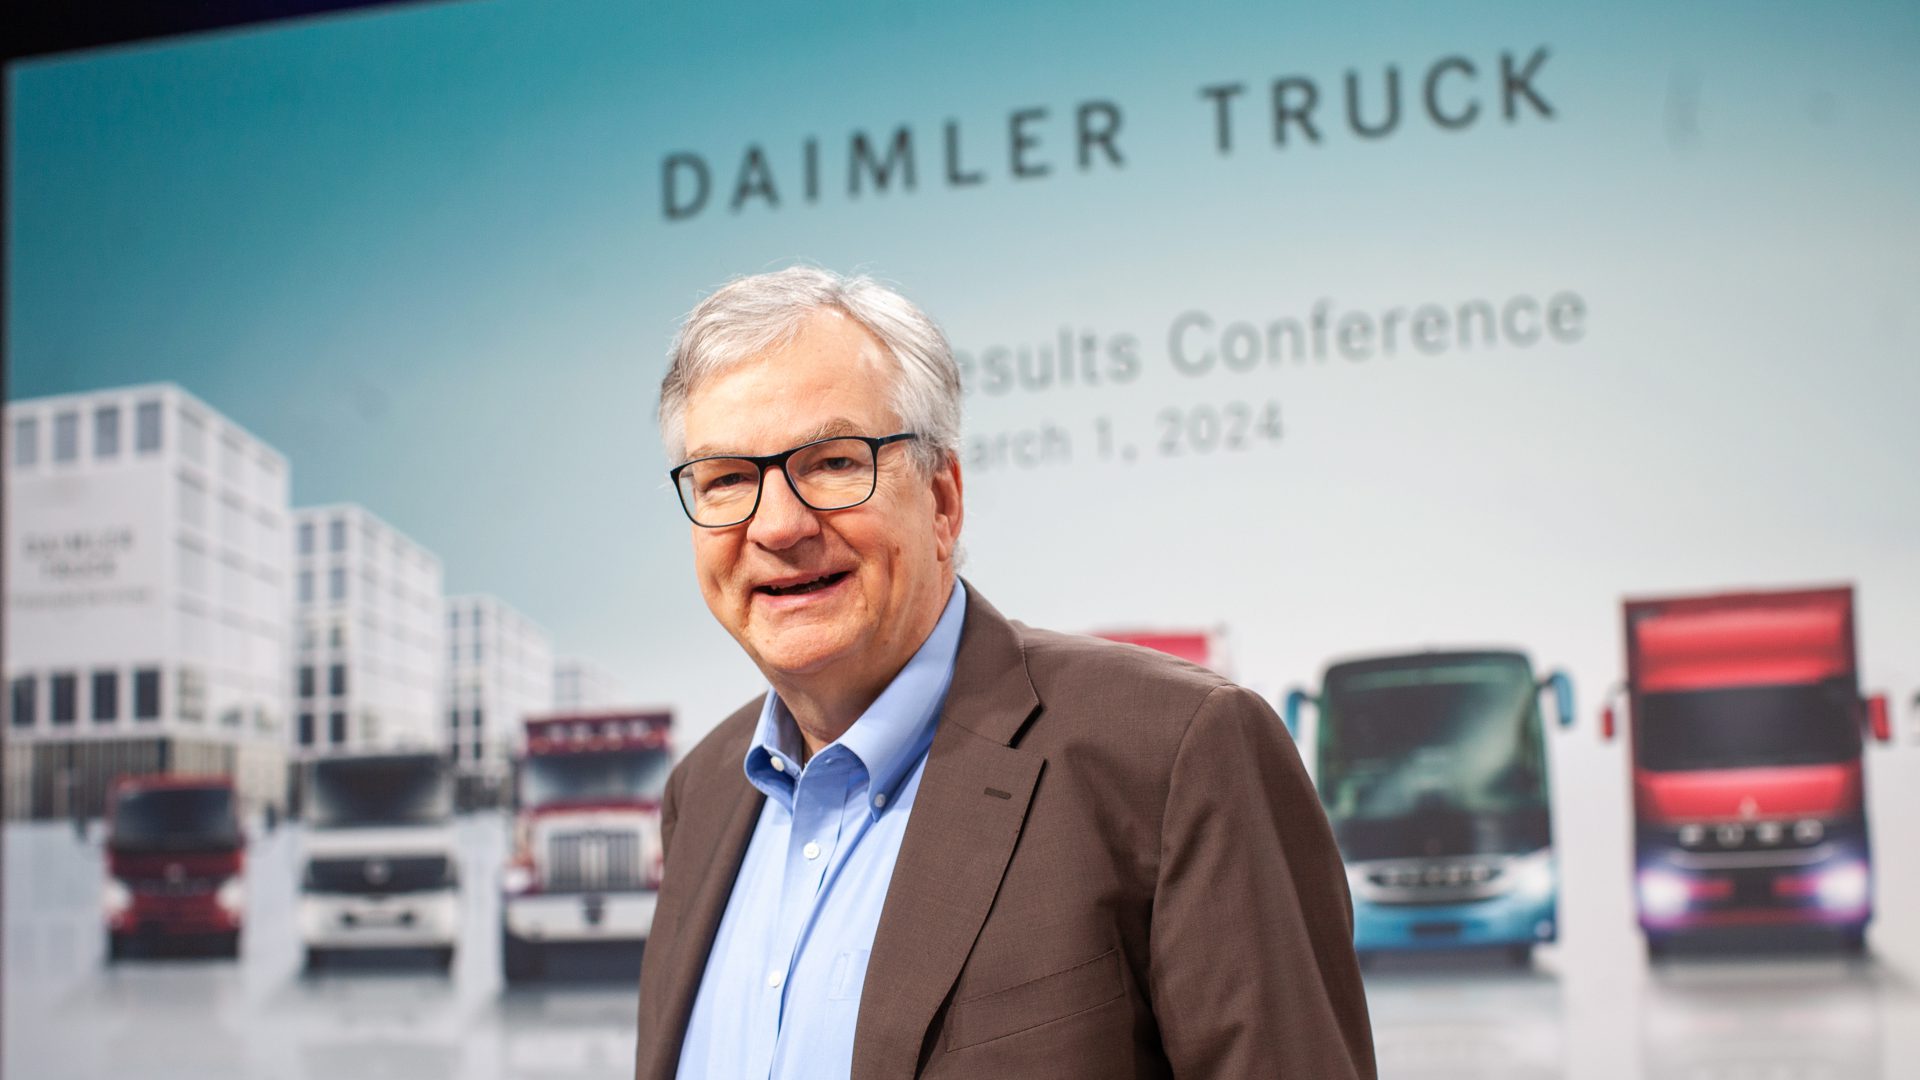 Daimler Truck martin daum